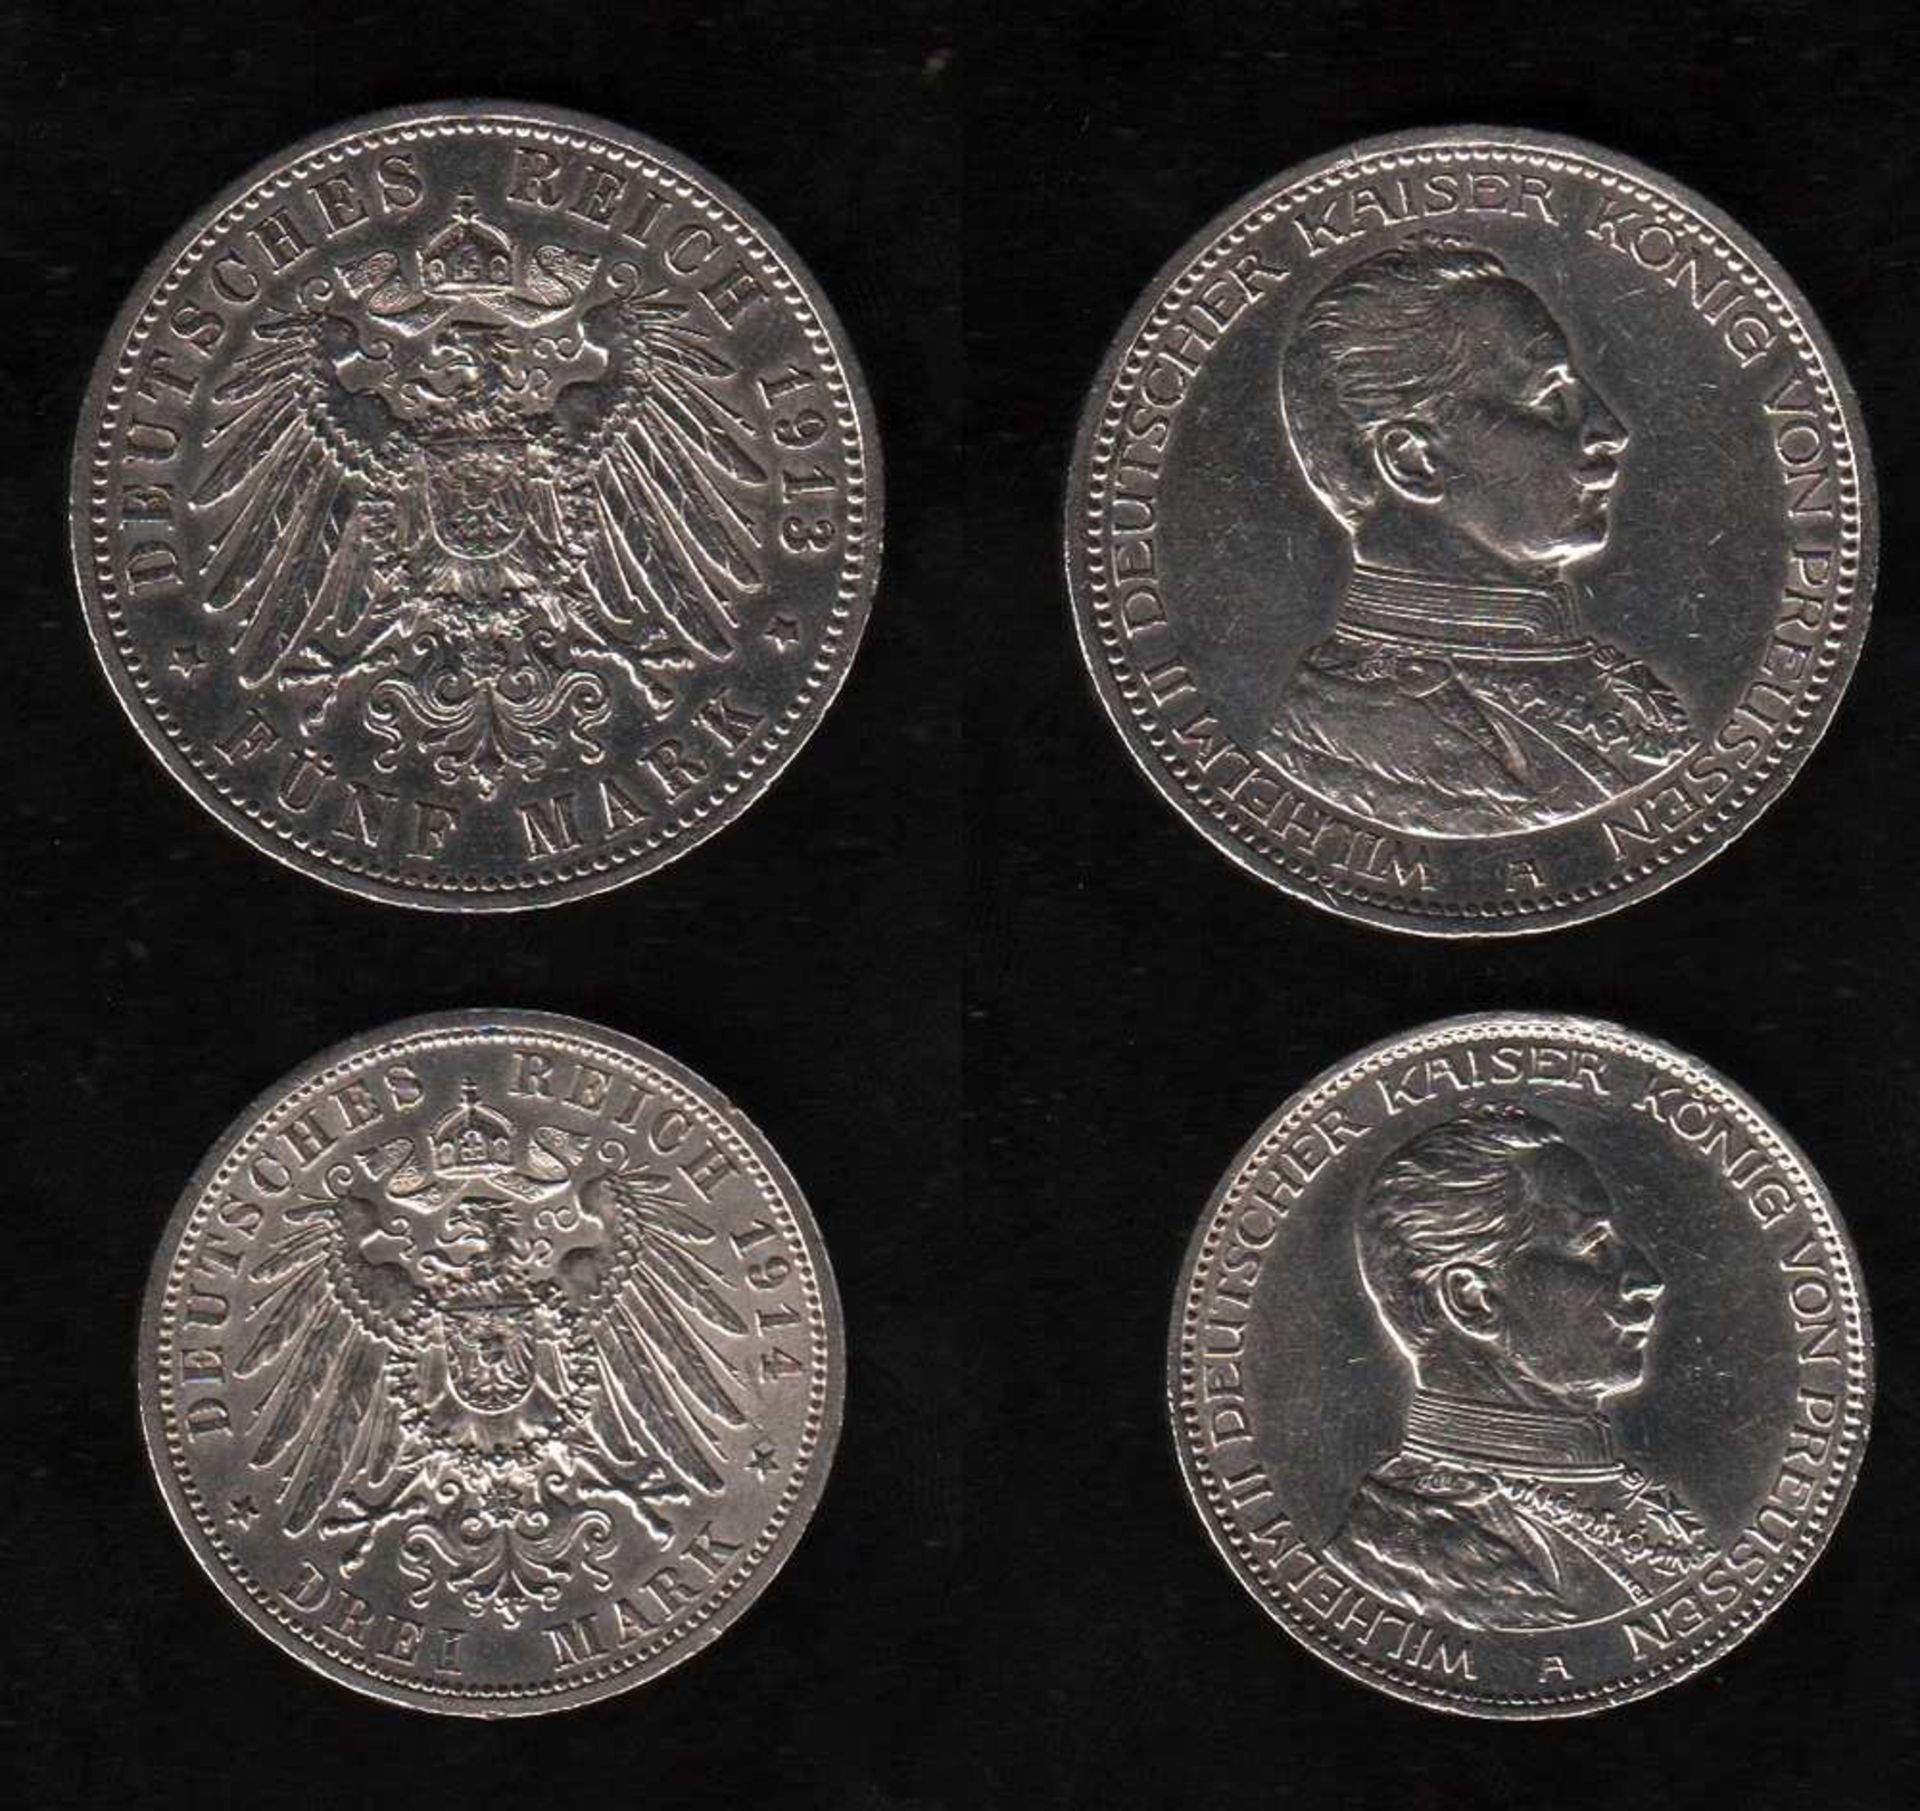 # Deutsches Reich. Silbermünze. 5 Mark. Wilhelm II., Deutscher Kaiser. A 1913. Vorderseite: